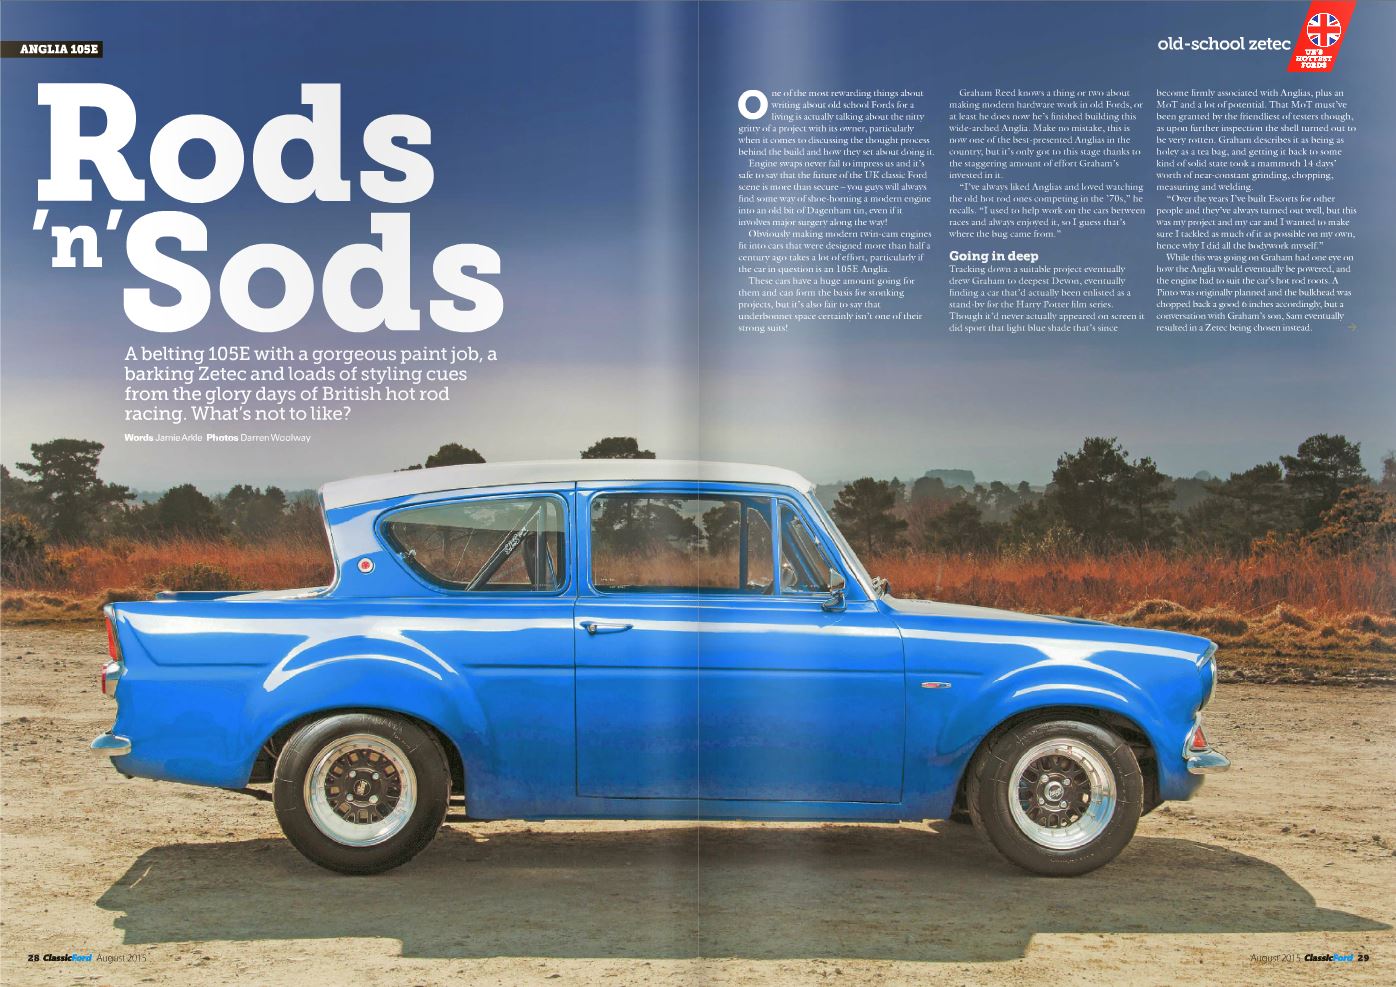 Classic Ford Magazine Aug 2015 - Zetec powered 105E Anglia